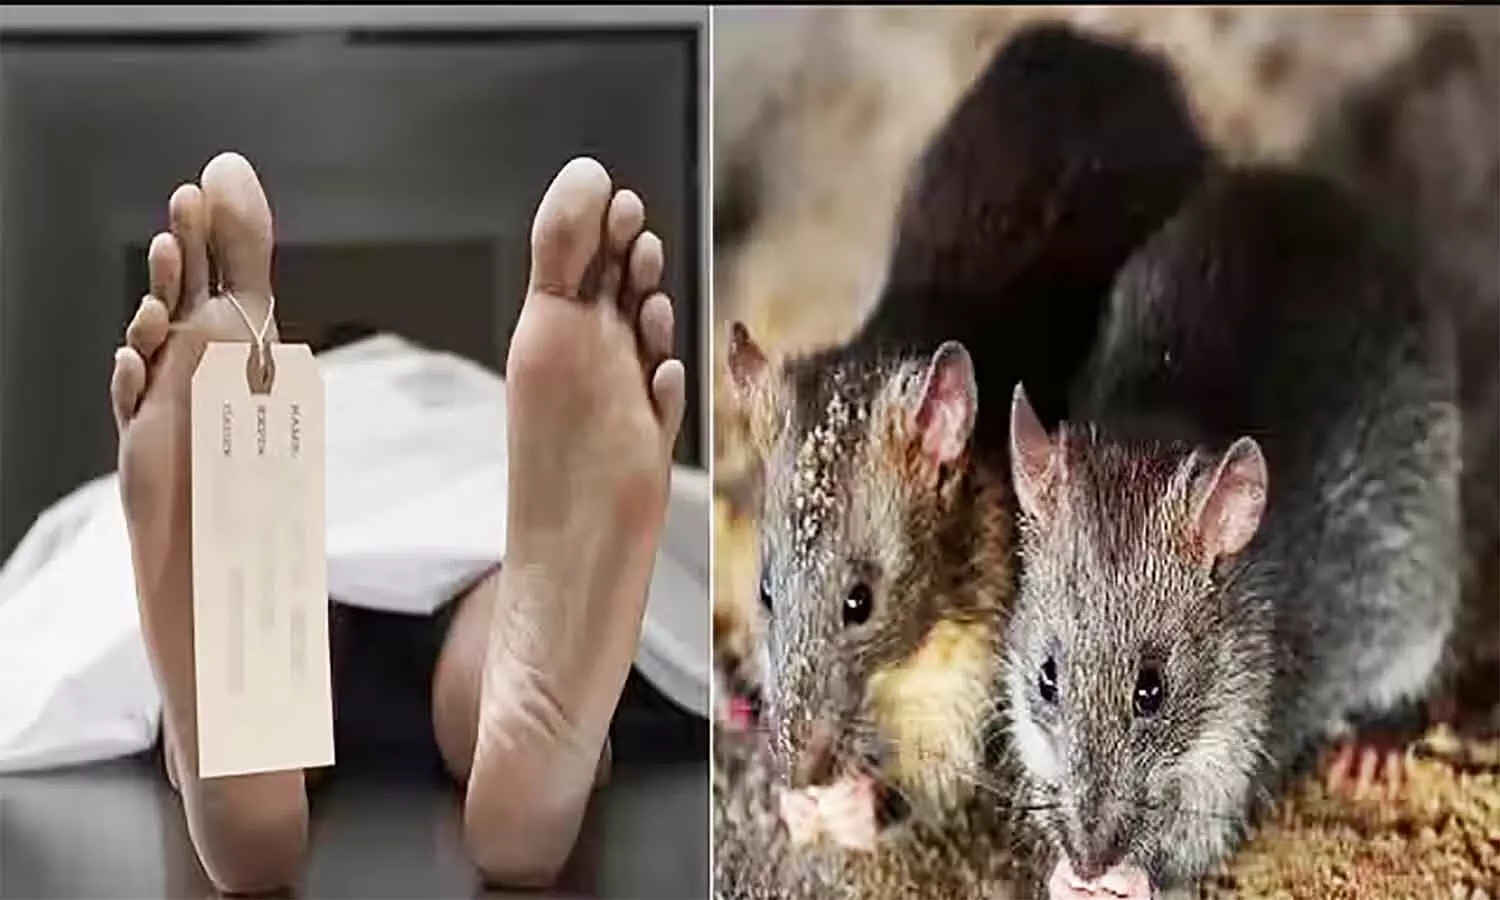 एमपी के भोपाल स्थित सरकारी अस्पताल की मोर्चरी में चूहों ने कुतर डाला शव, जमकर हुआ हंगामा